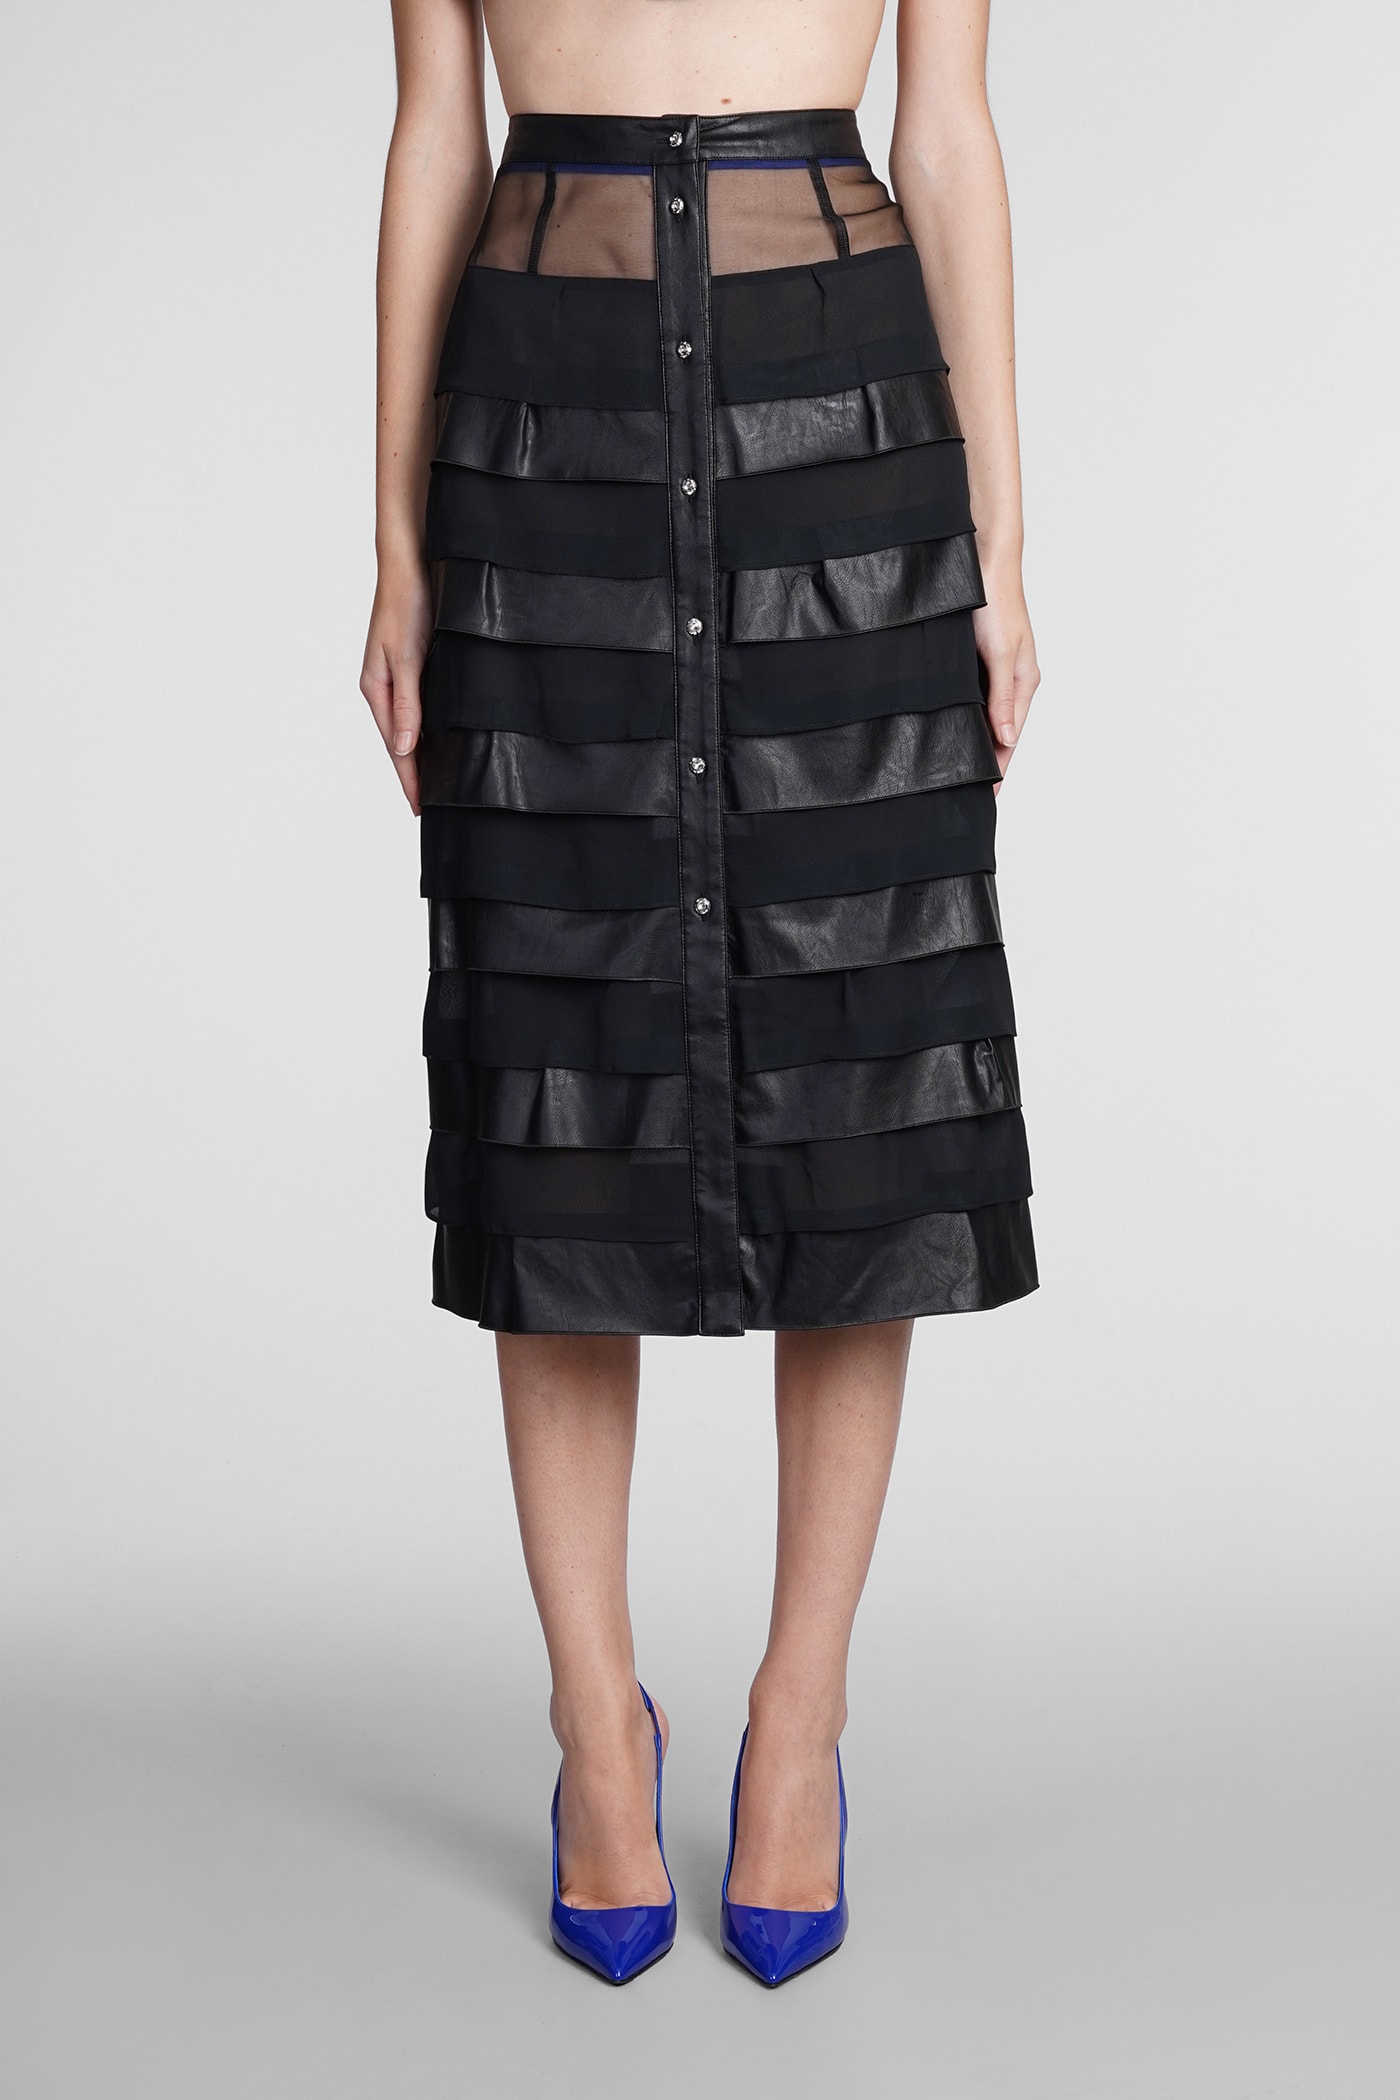 Koché Skirt In Black Viscose